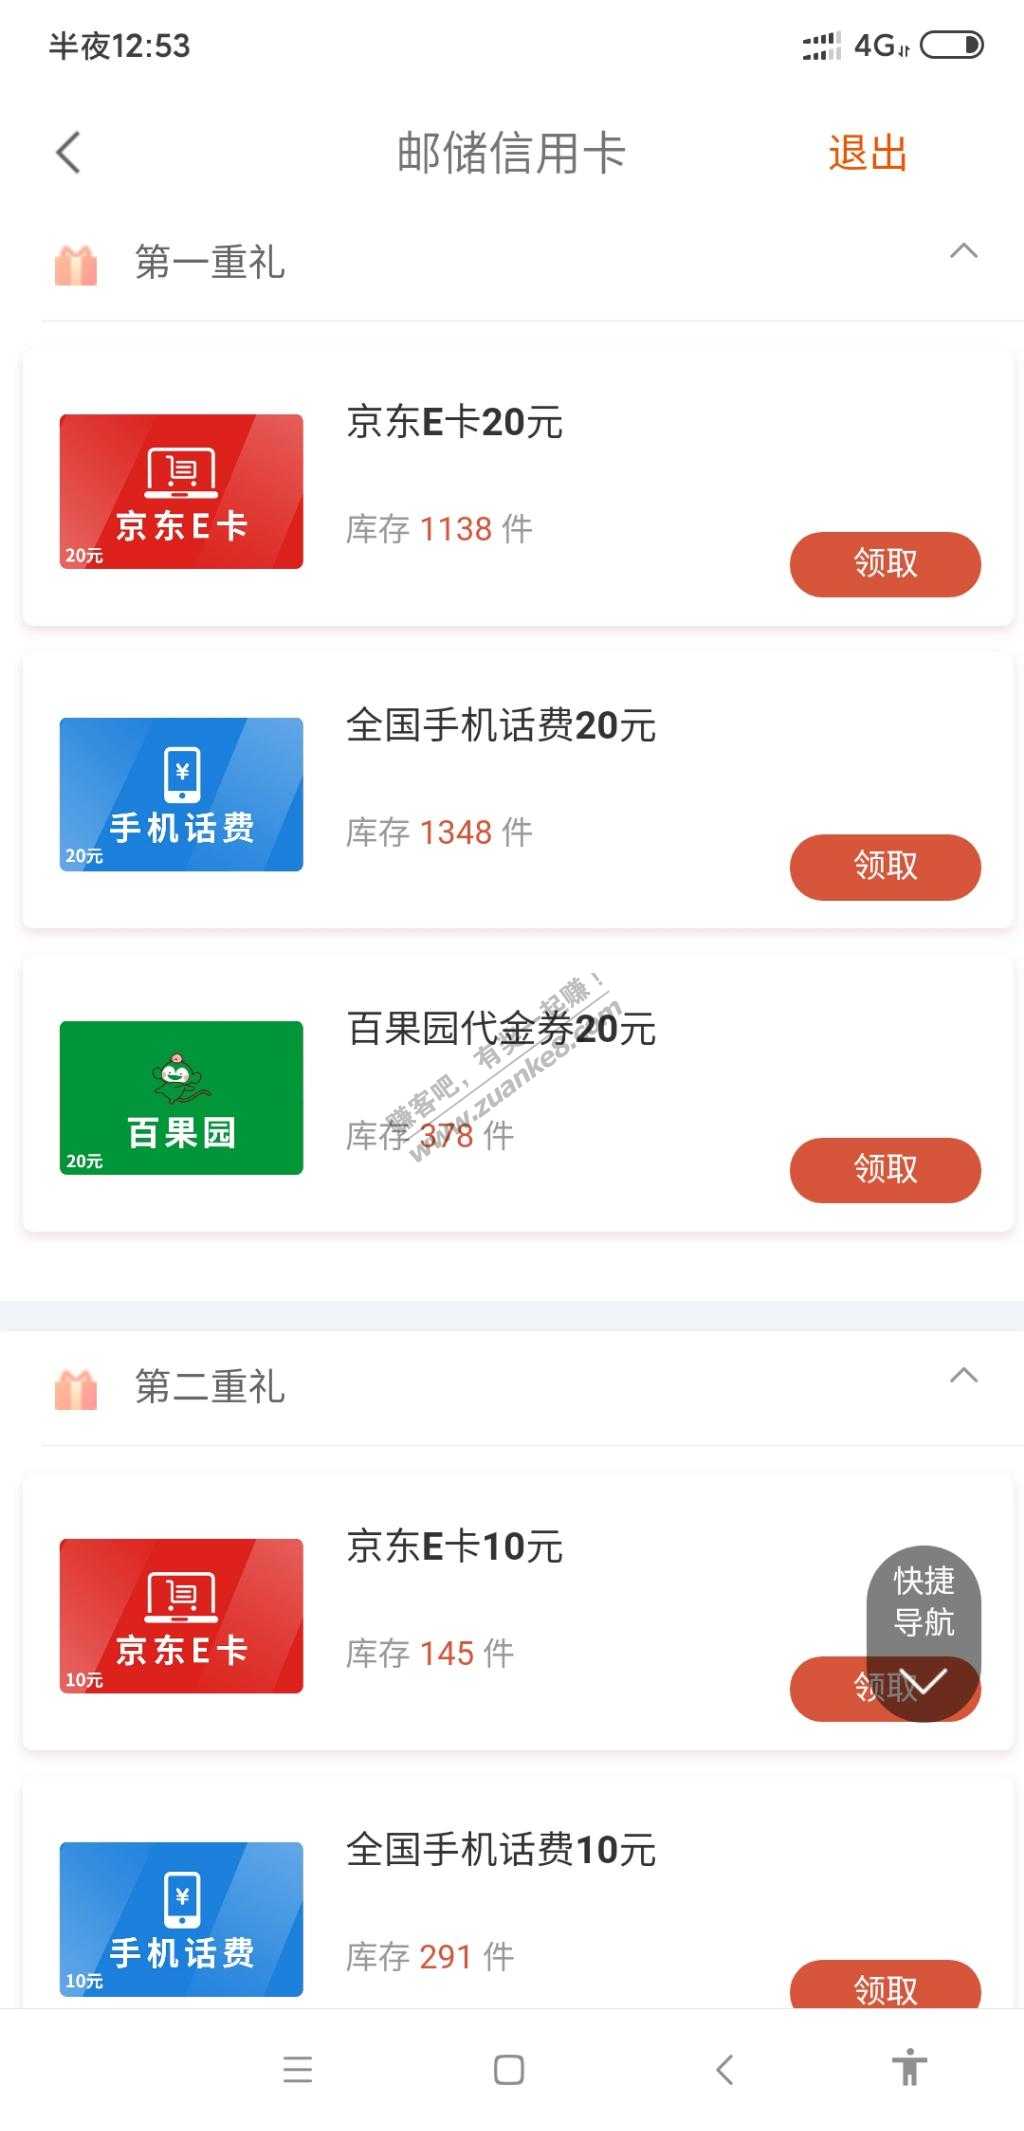 邮储信用卡30毛-惠小助(52huixz.com)